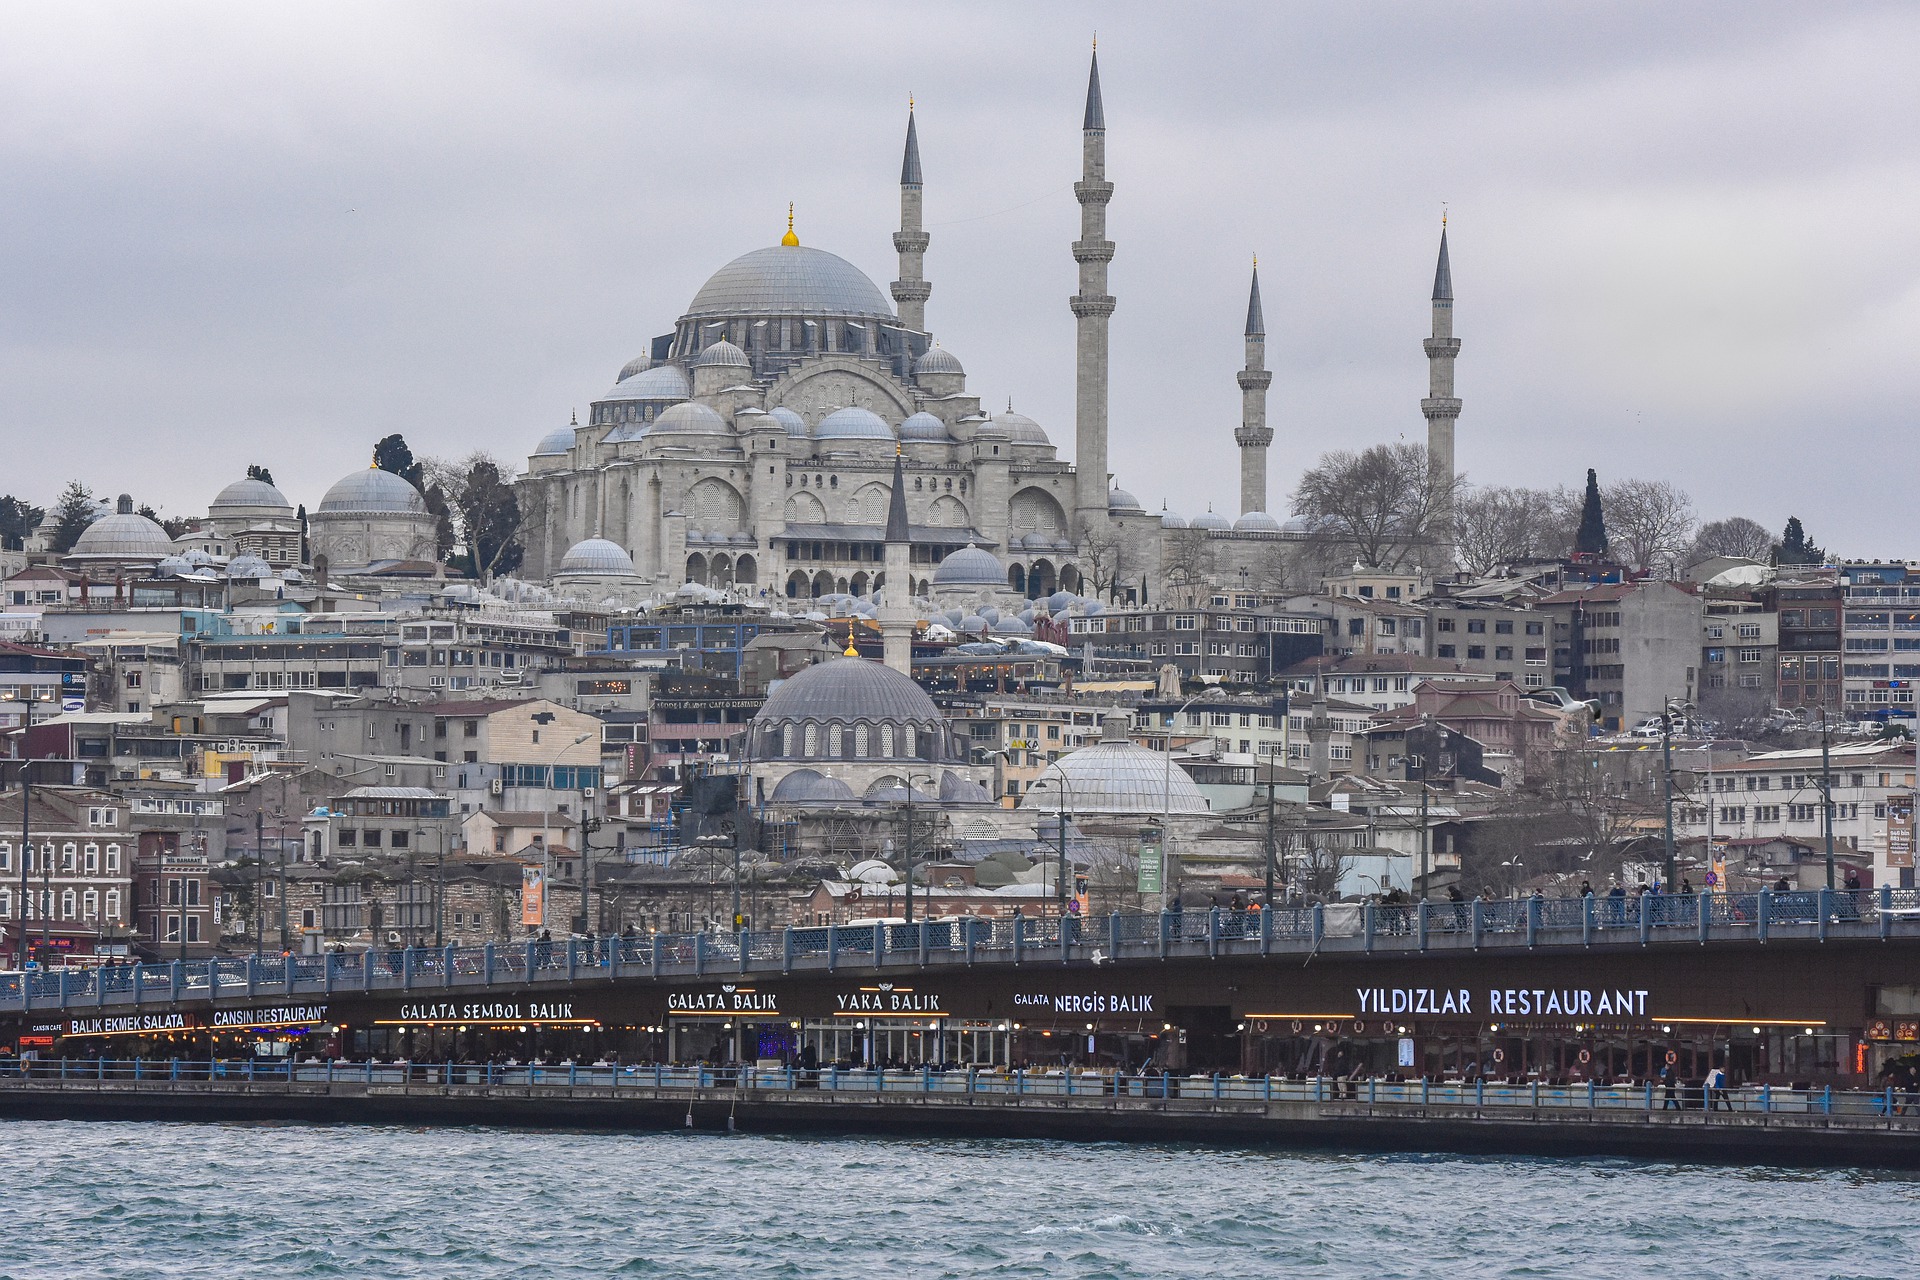 Suleymaniye Mosque Istanbul, Turkey